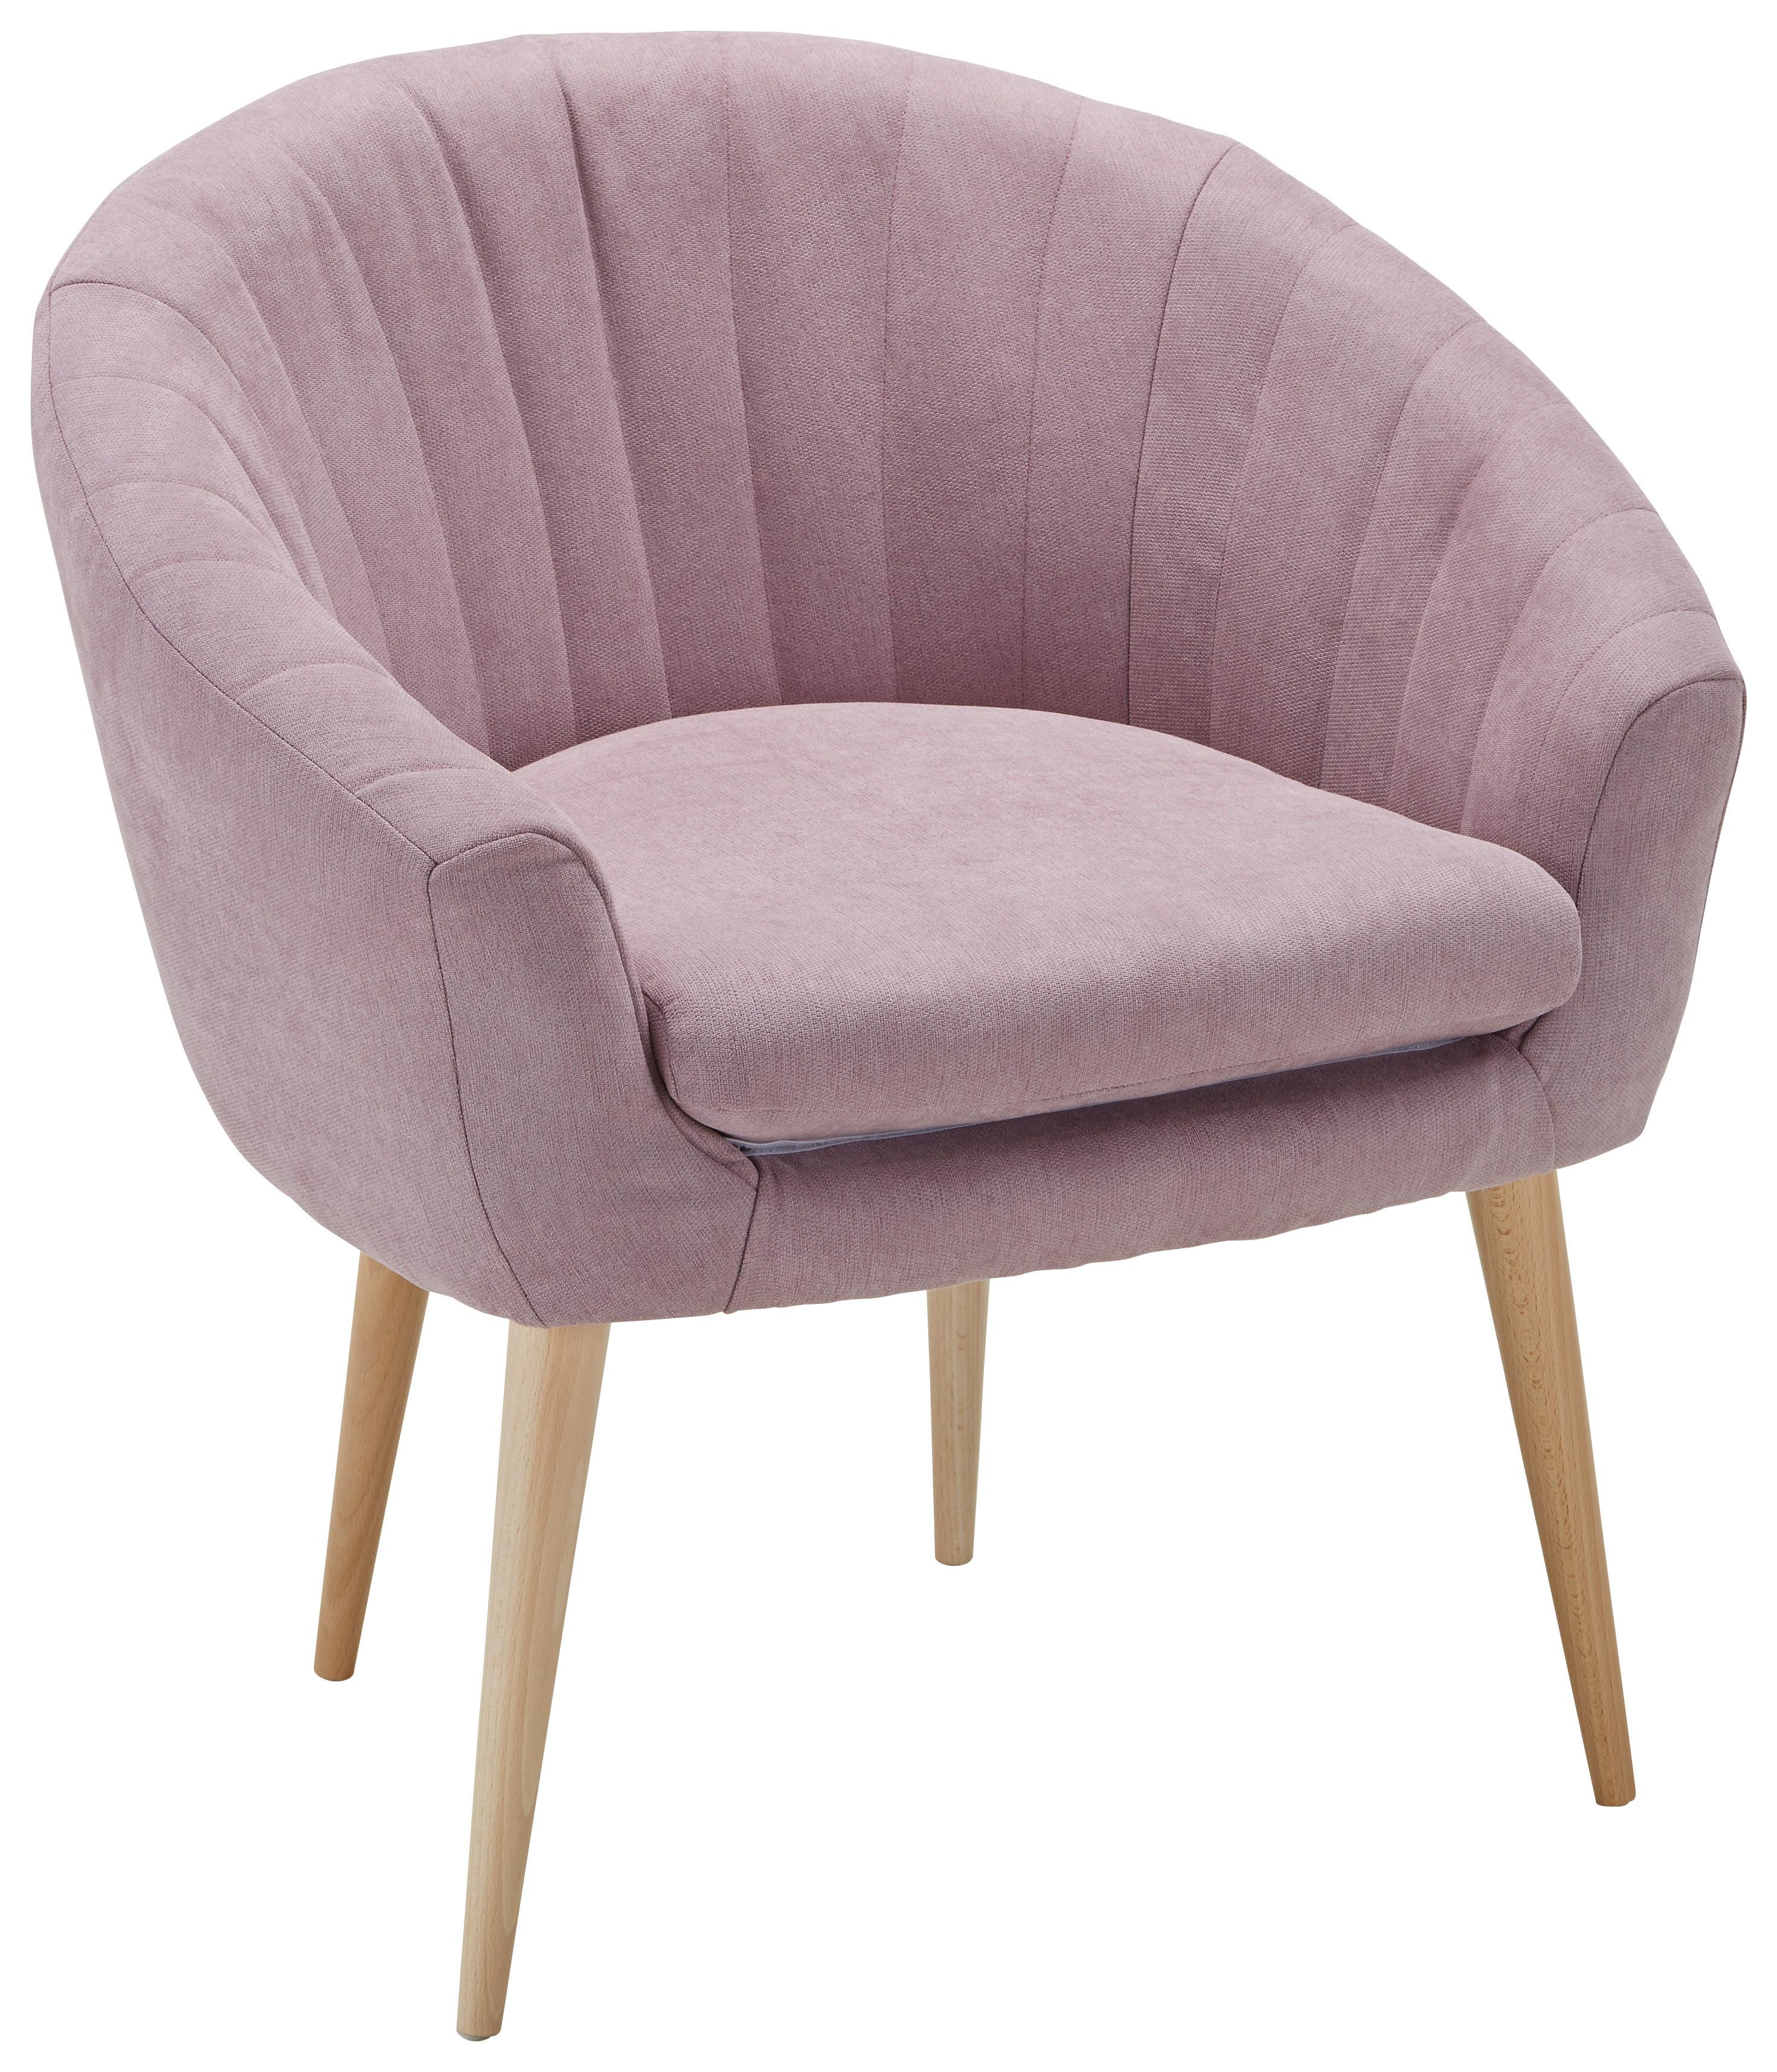 Fotelja Bea - ružičasta/prirodne boje, Modern, tekstil (75/77/66cm) - Modern Living